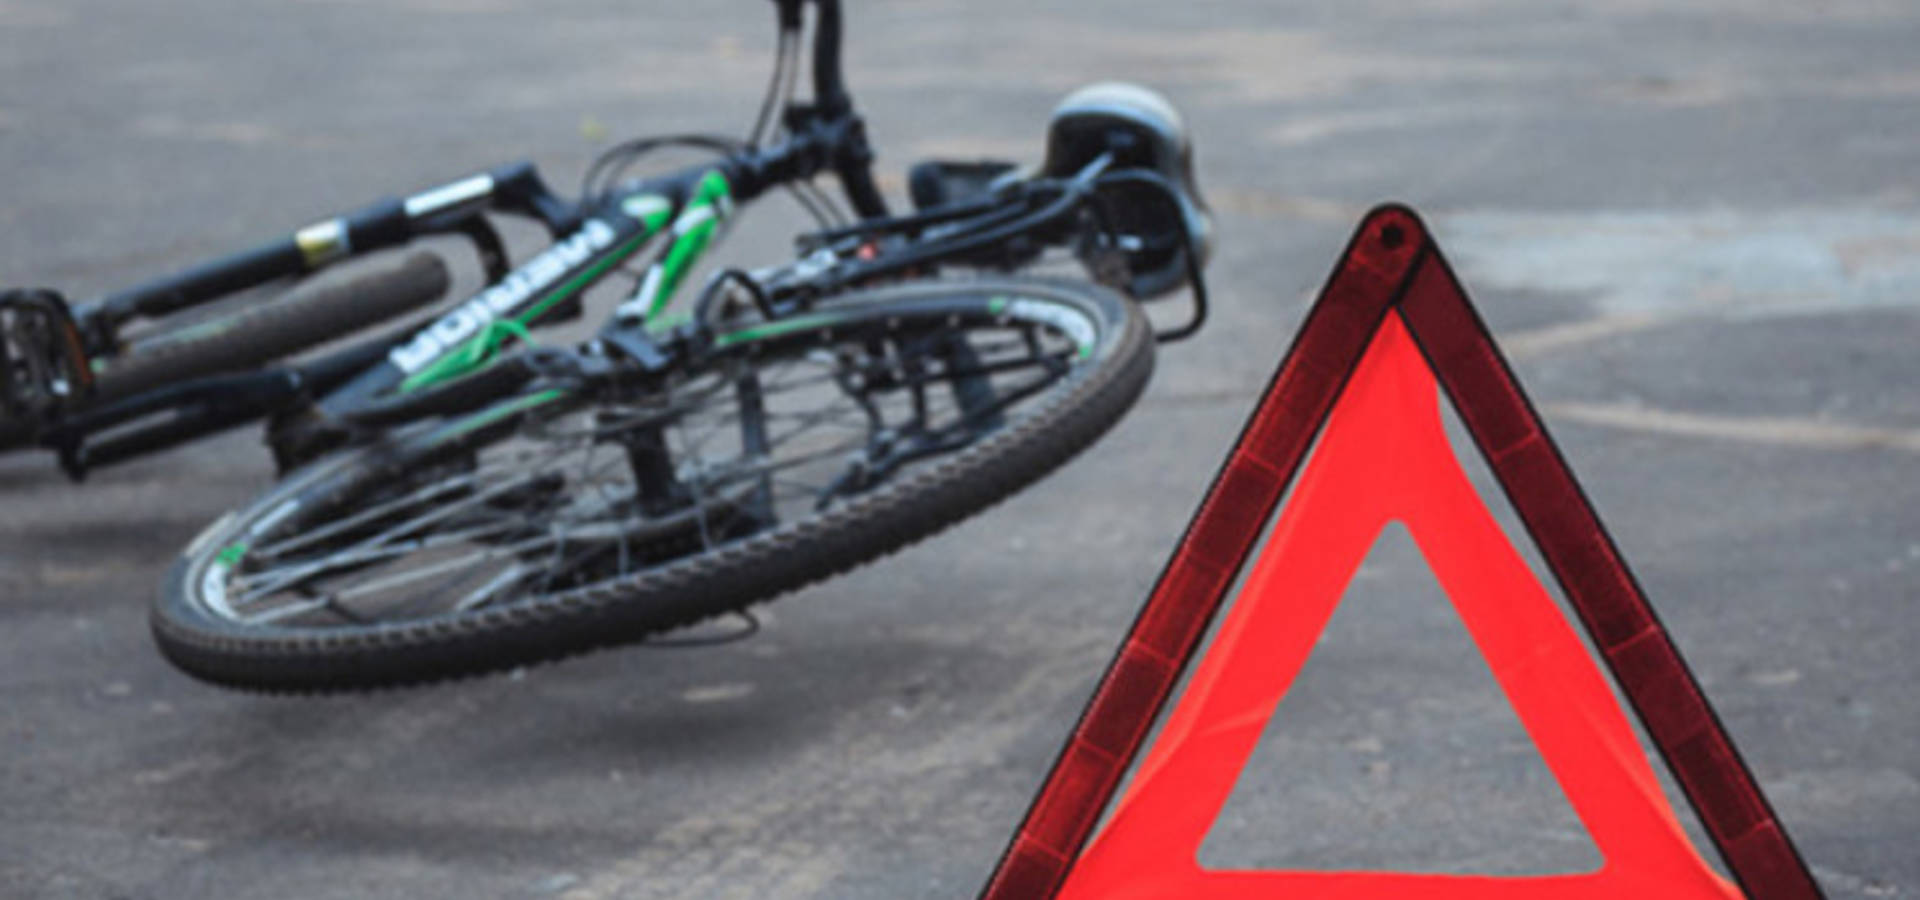 У Хмільницькому районі автівка на смерть збила велосипедиста